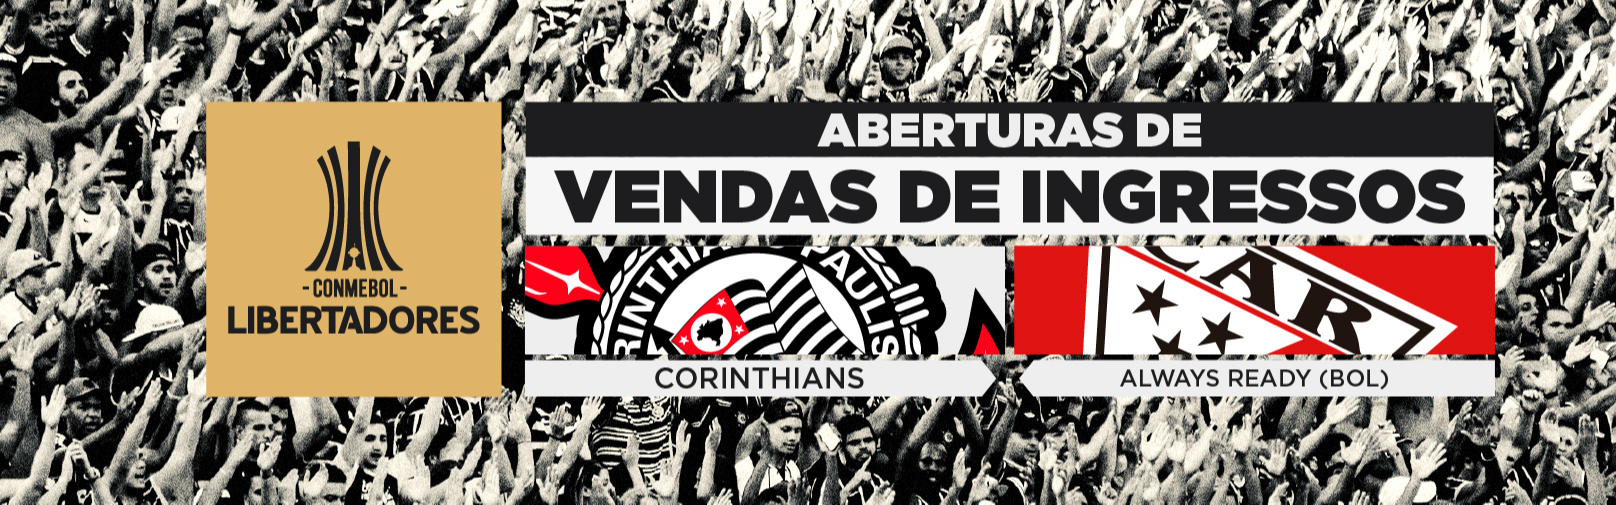 CONMEBOL Libertadores 2022 – Vendas de ingressos: Corinthians x Always Ready-BOL (26/5) na Neo Química Arena